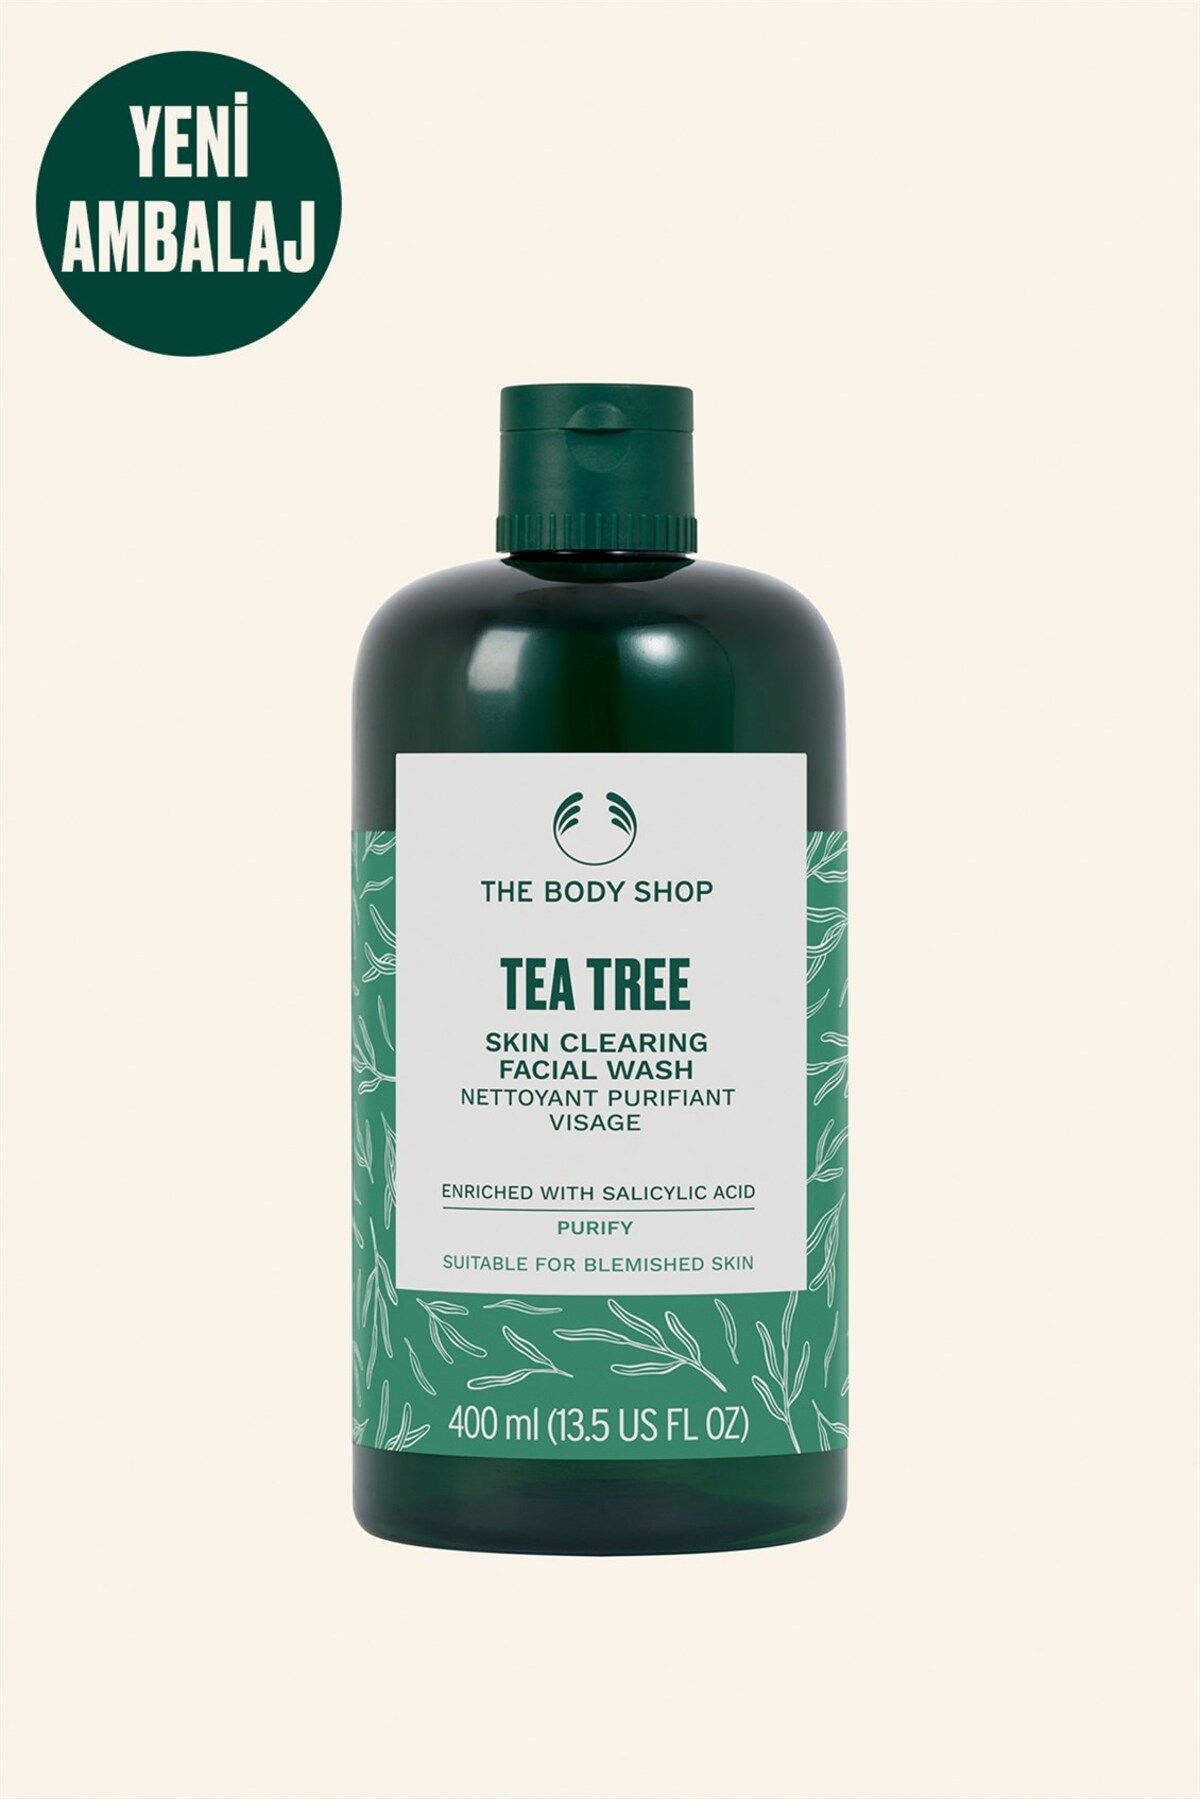 THE BODY SHOP Çay Ağacı Tea Tree Arındırıcı Tonik 400 ml